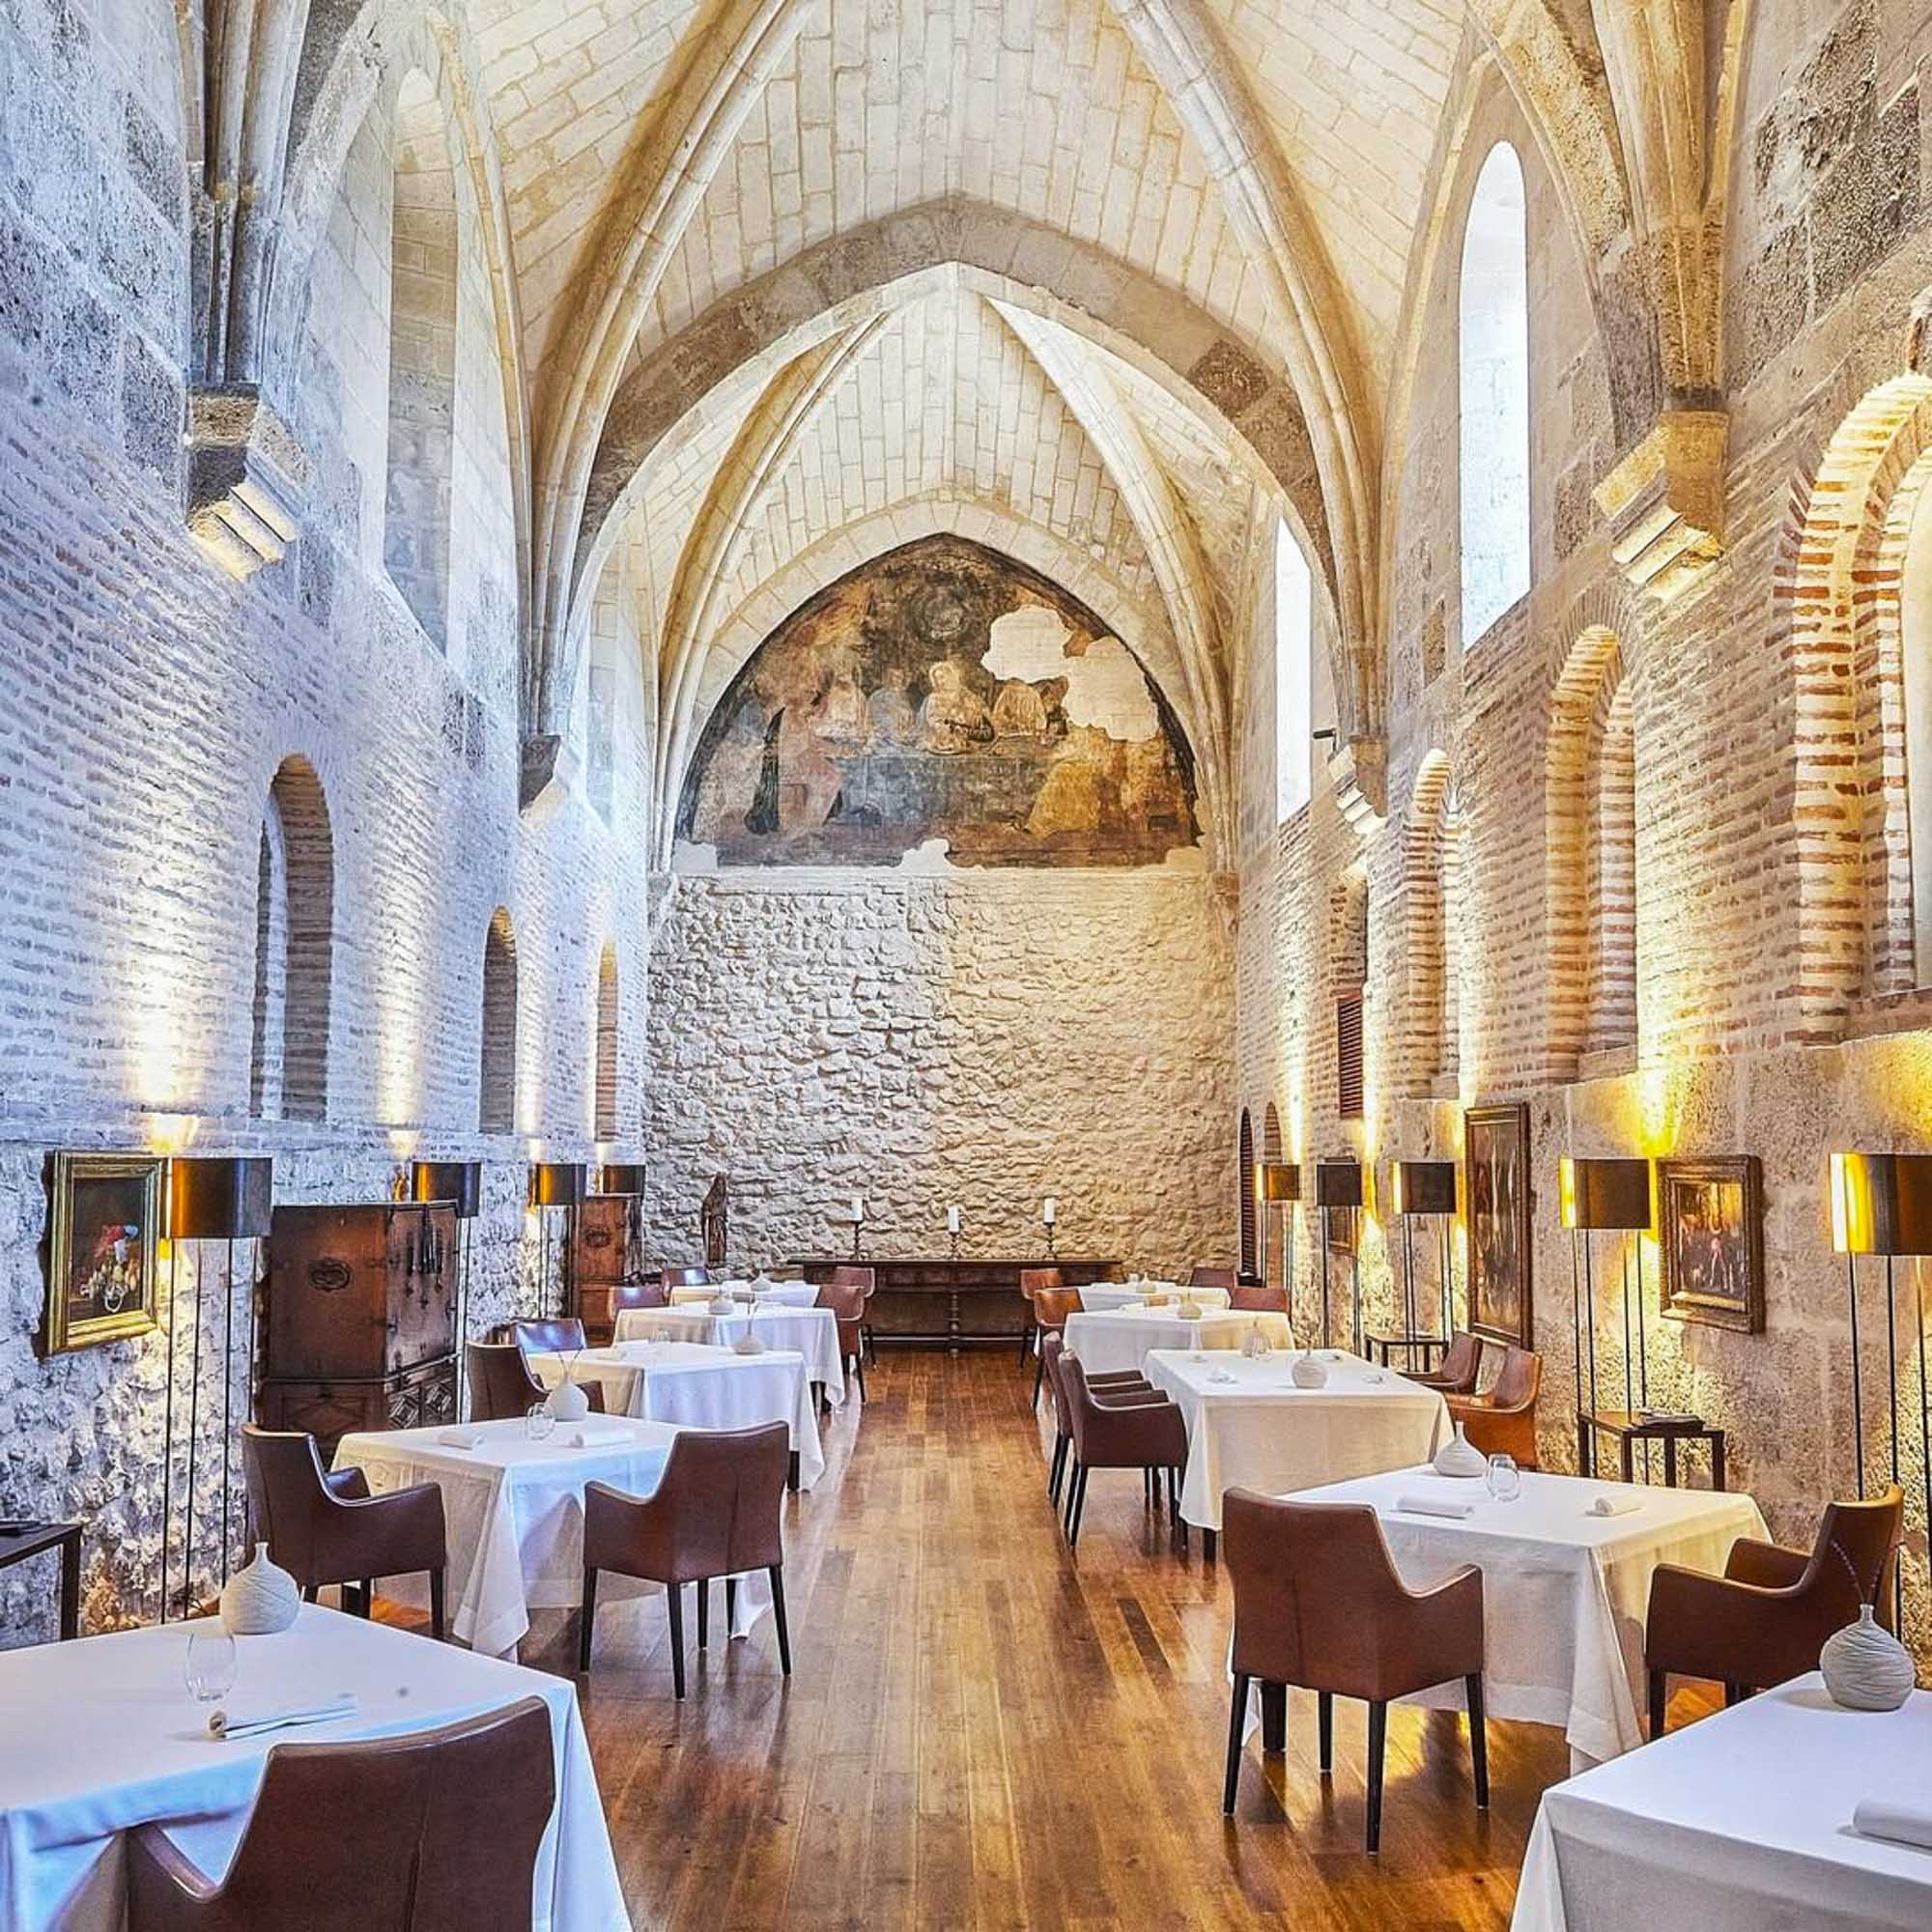 Restaurante refectorio Abadía Retuerta, Restaurantes en monasterios de España